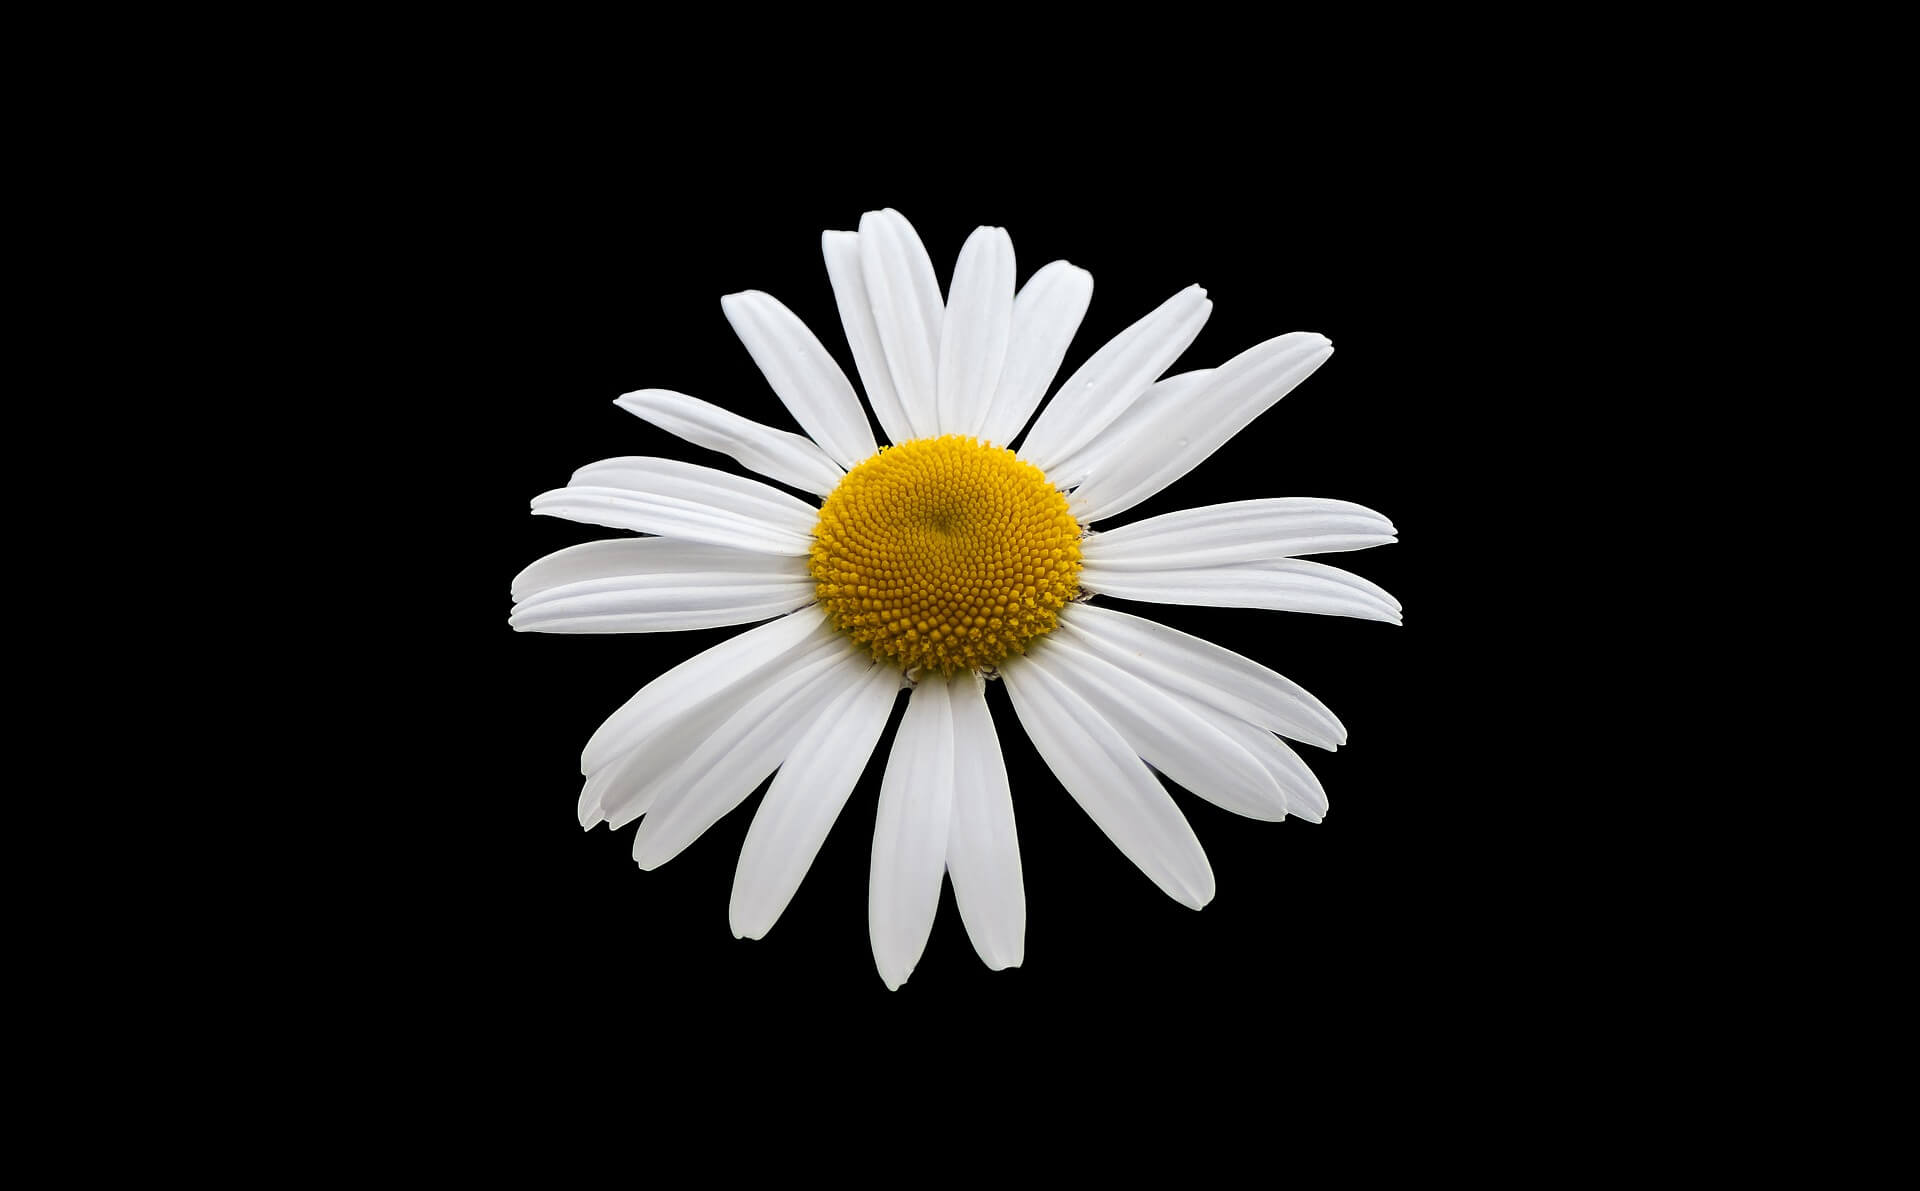 Hình nền hoa cúc trắng nền đen cho máy tính